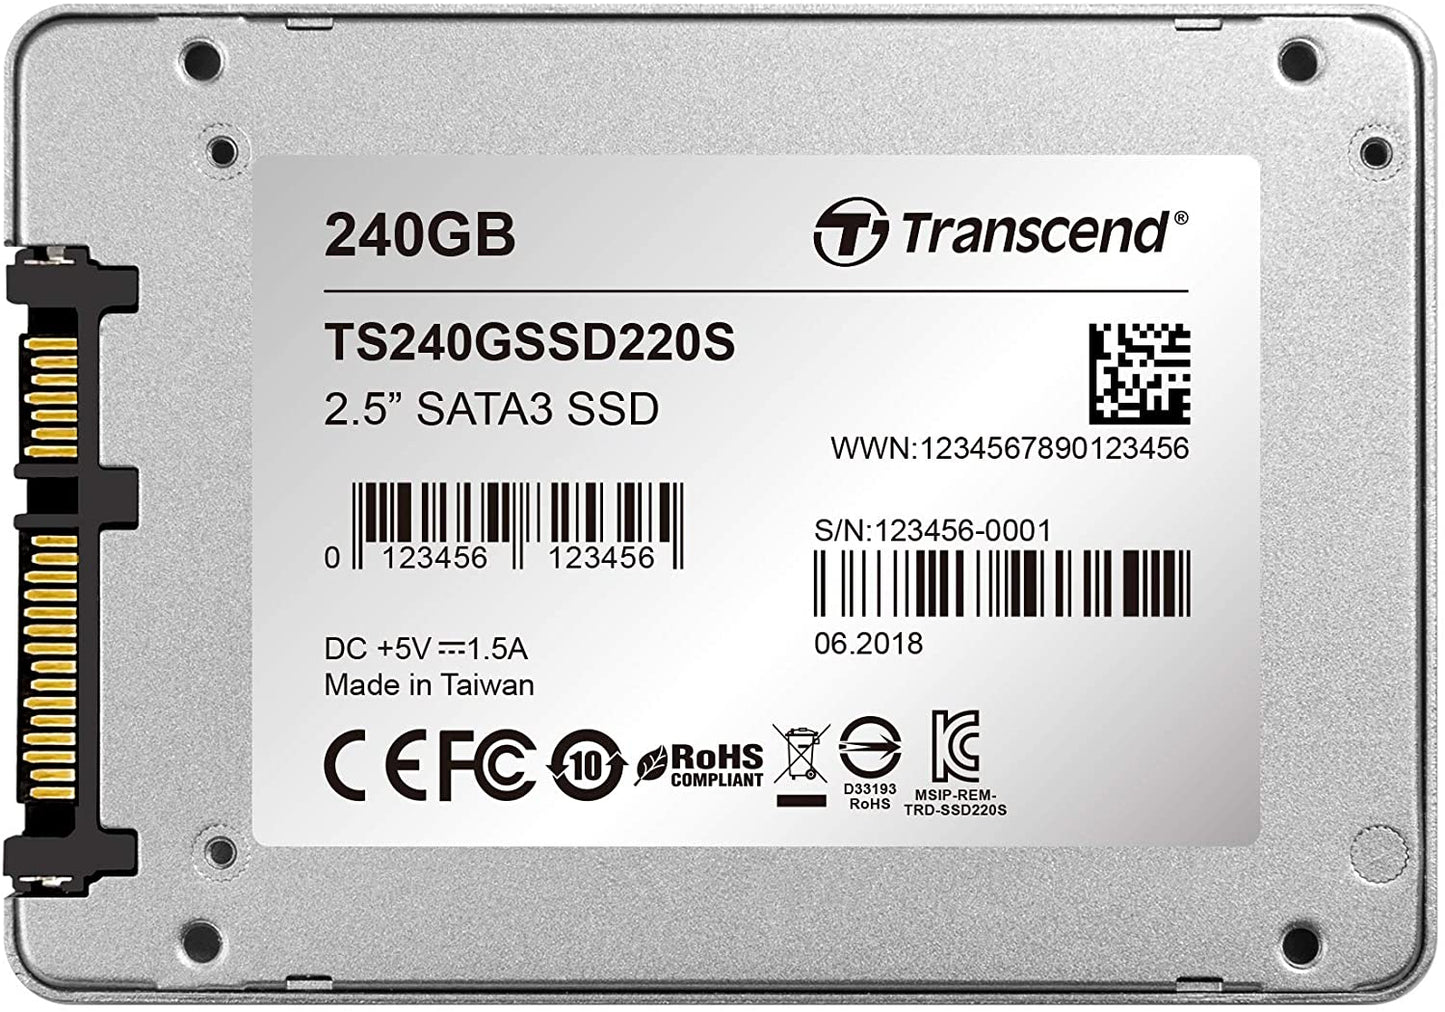 Transcend 480 GB - SSD